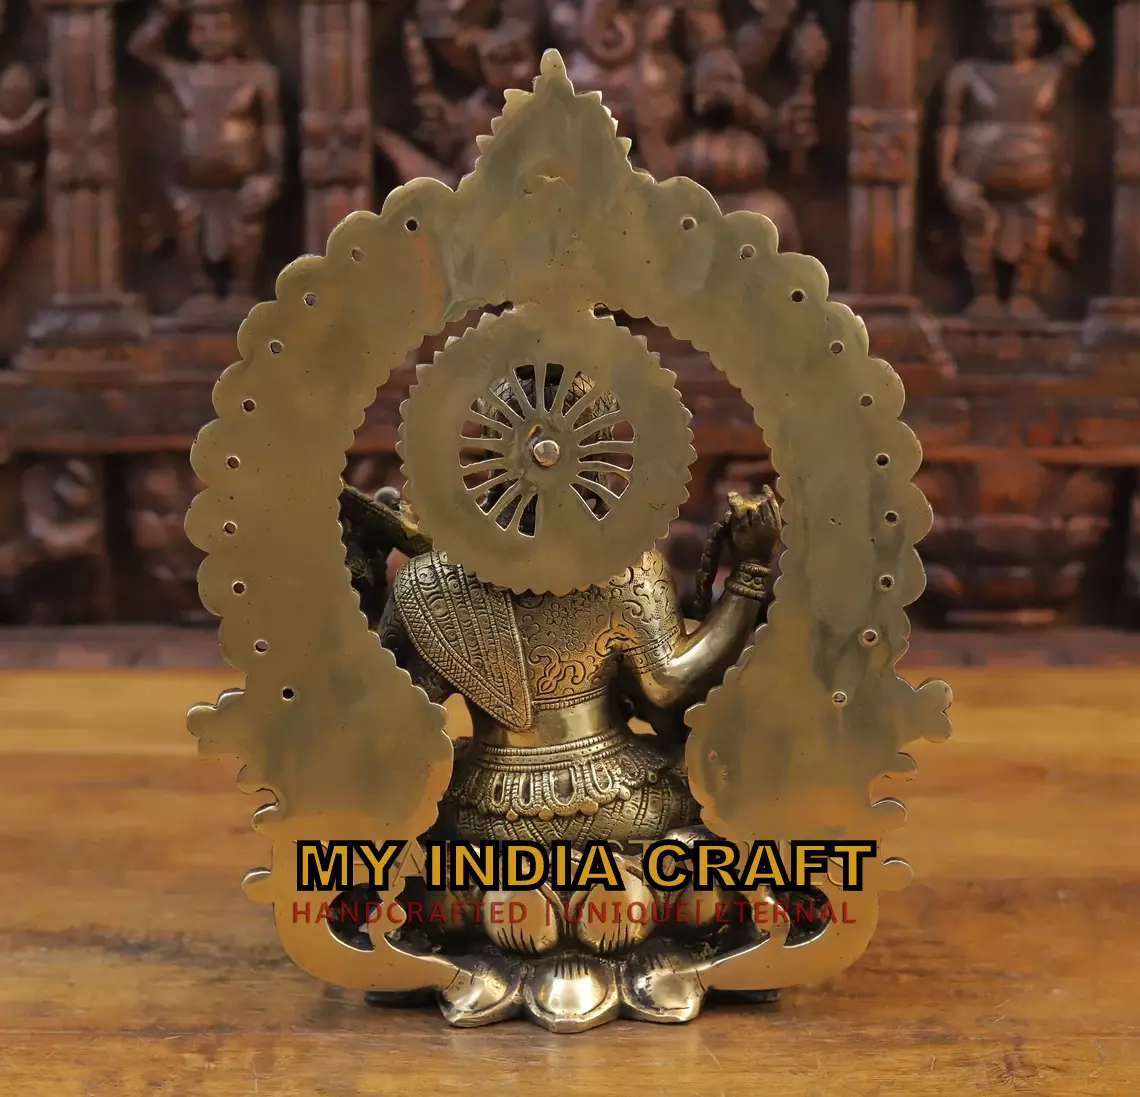 14.5" Saraswati statue